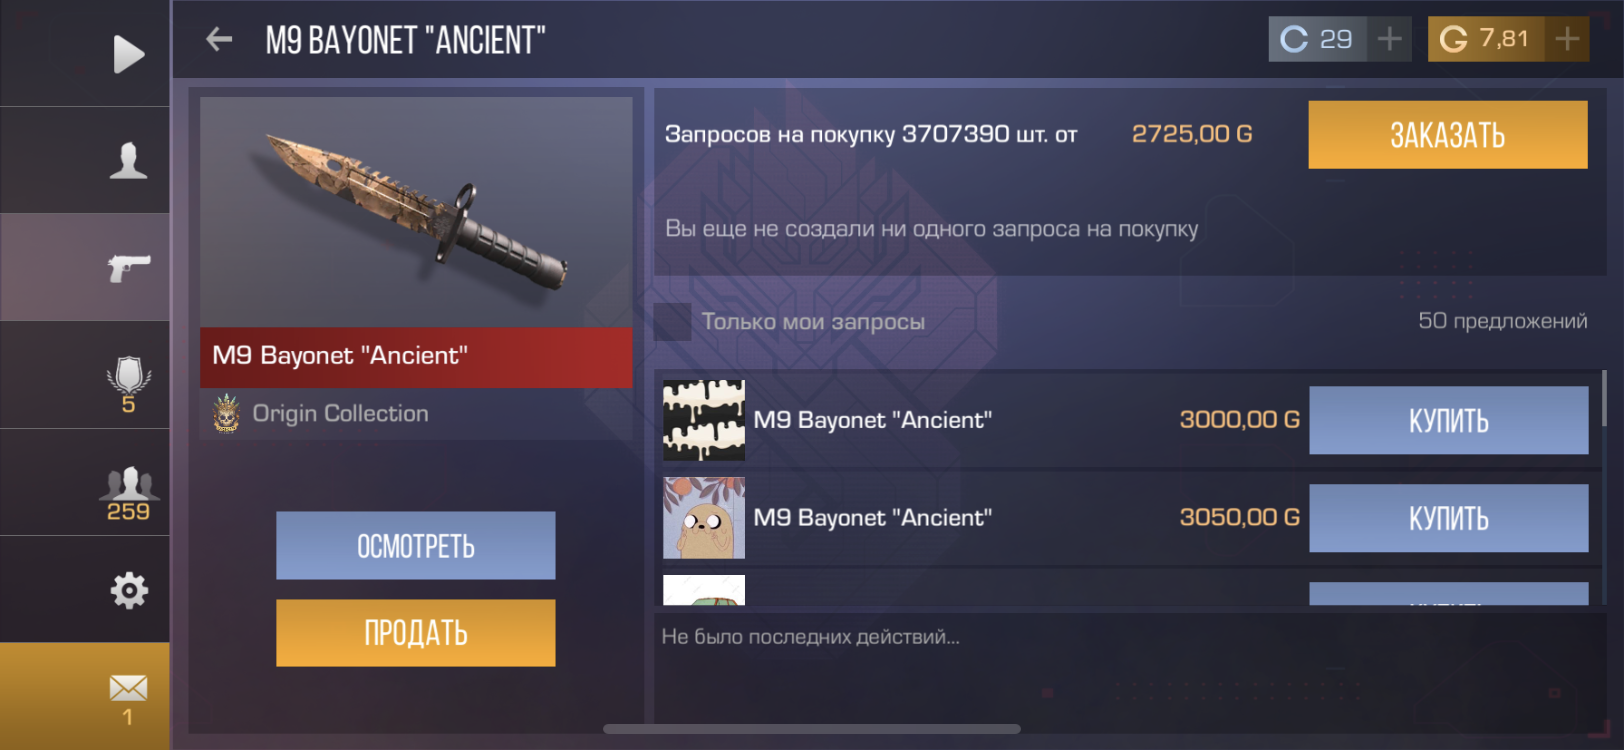 продажа предметов, вещей M9 Bayonet “Ancient” - Скины в Standoff 2